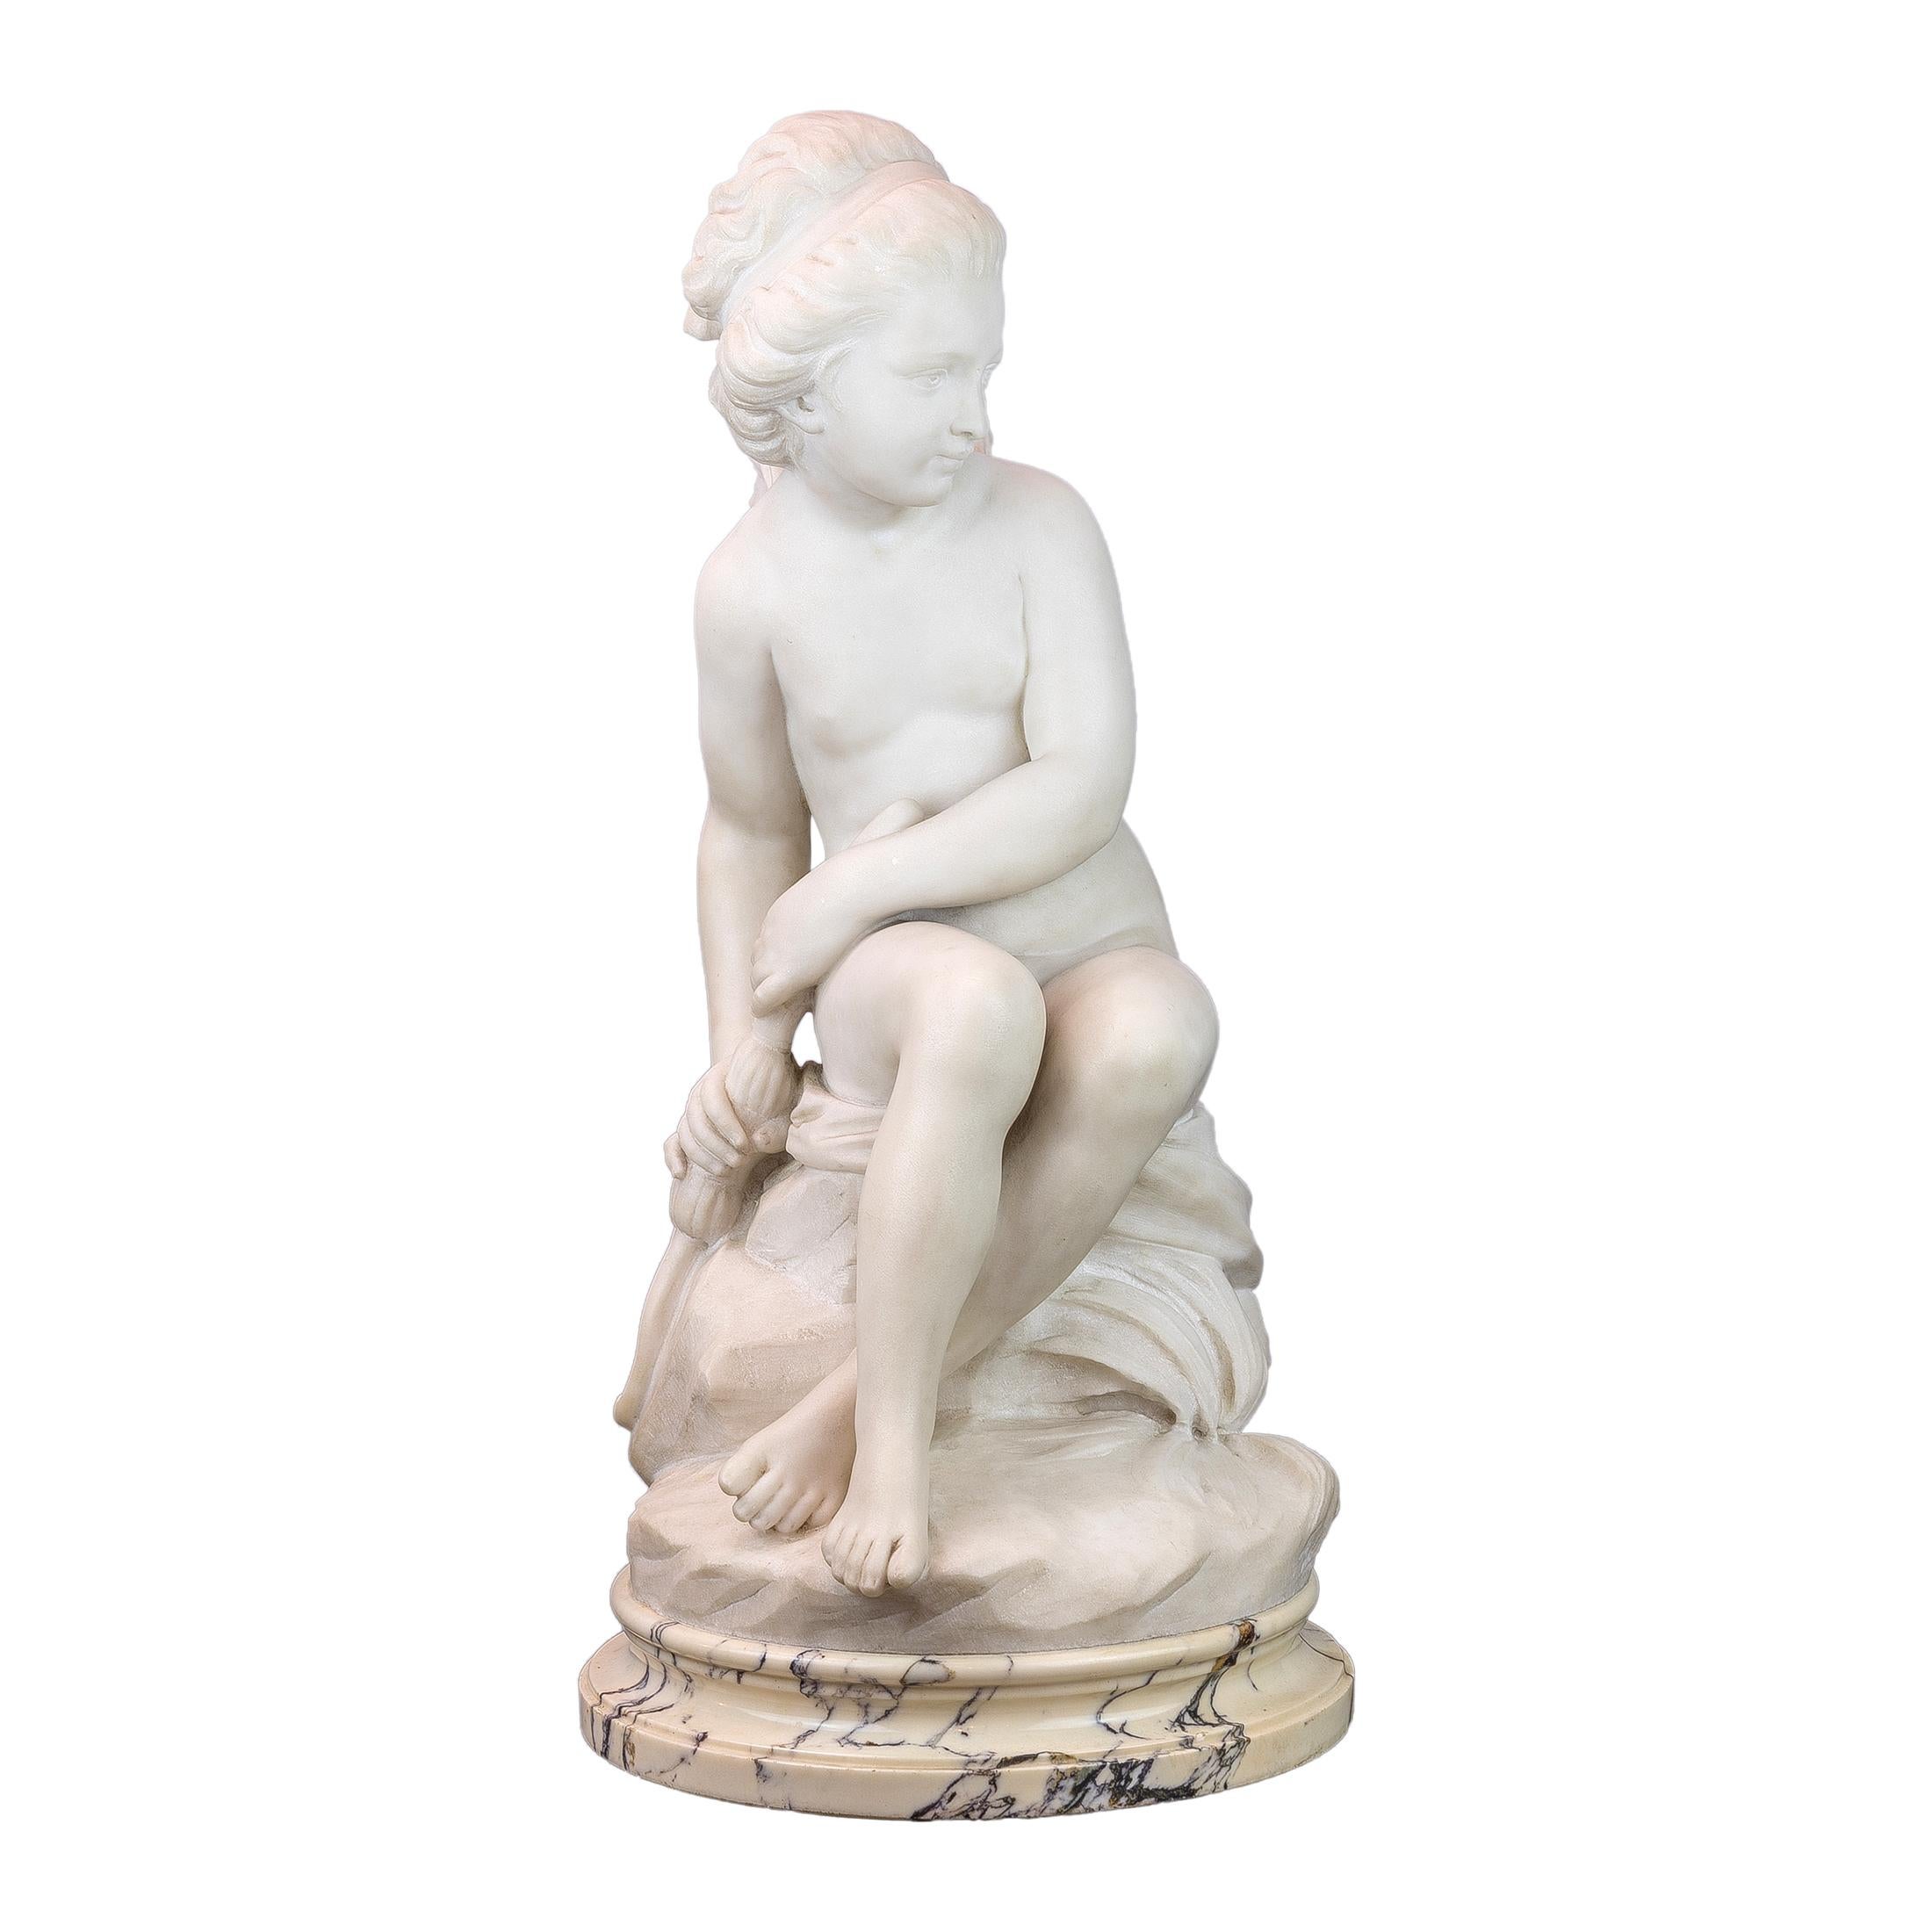 A fine Italian white marble sculpture of a Winged Nymph by E. DeCori

Artist: E. DeCori
Date: circa 19th century
Origin: Italian
Dimension: 23 1/2 in x 11 in x 14 in.